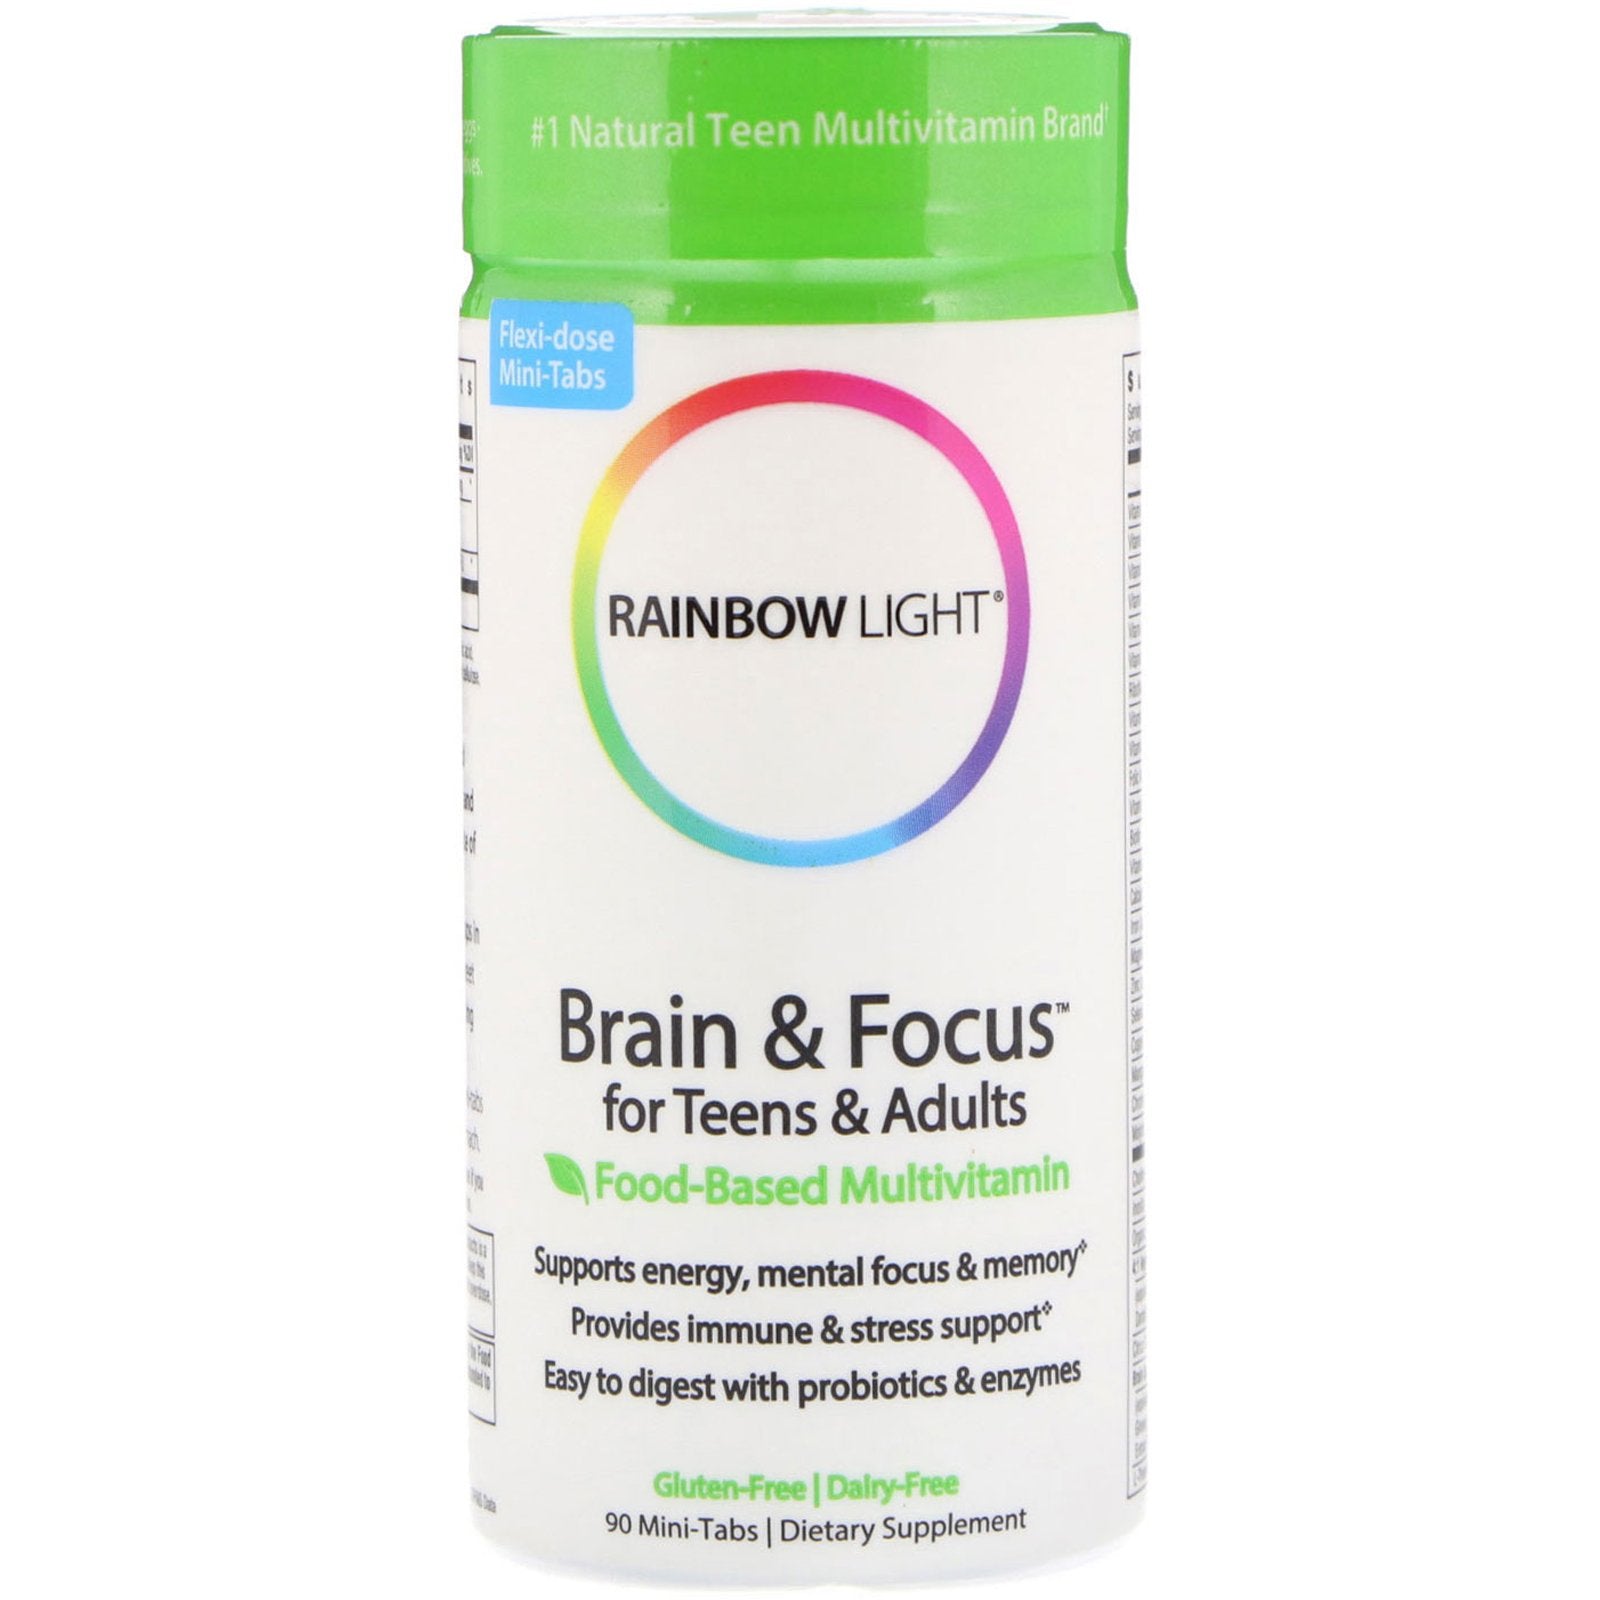 Rainbow Light, Brain & Focus for Teens & Adults, Food-Based Multivitamin, 90 Mini-Tabs